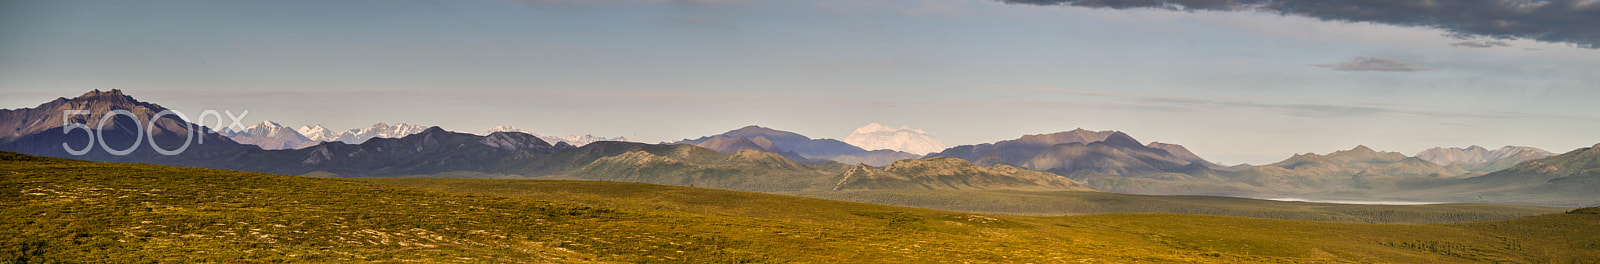 Panasonic Lumix DMC-G5 sample photo. Denali national park panorama - 01 photography